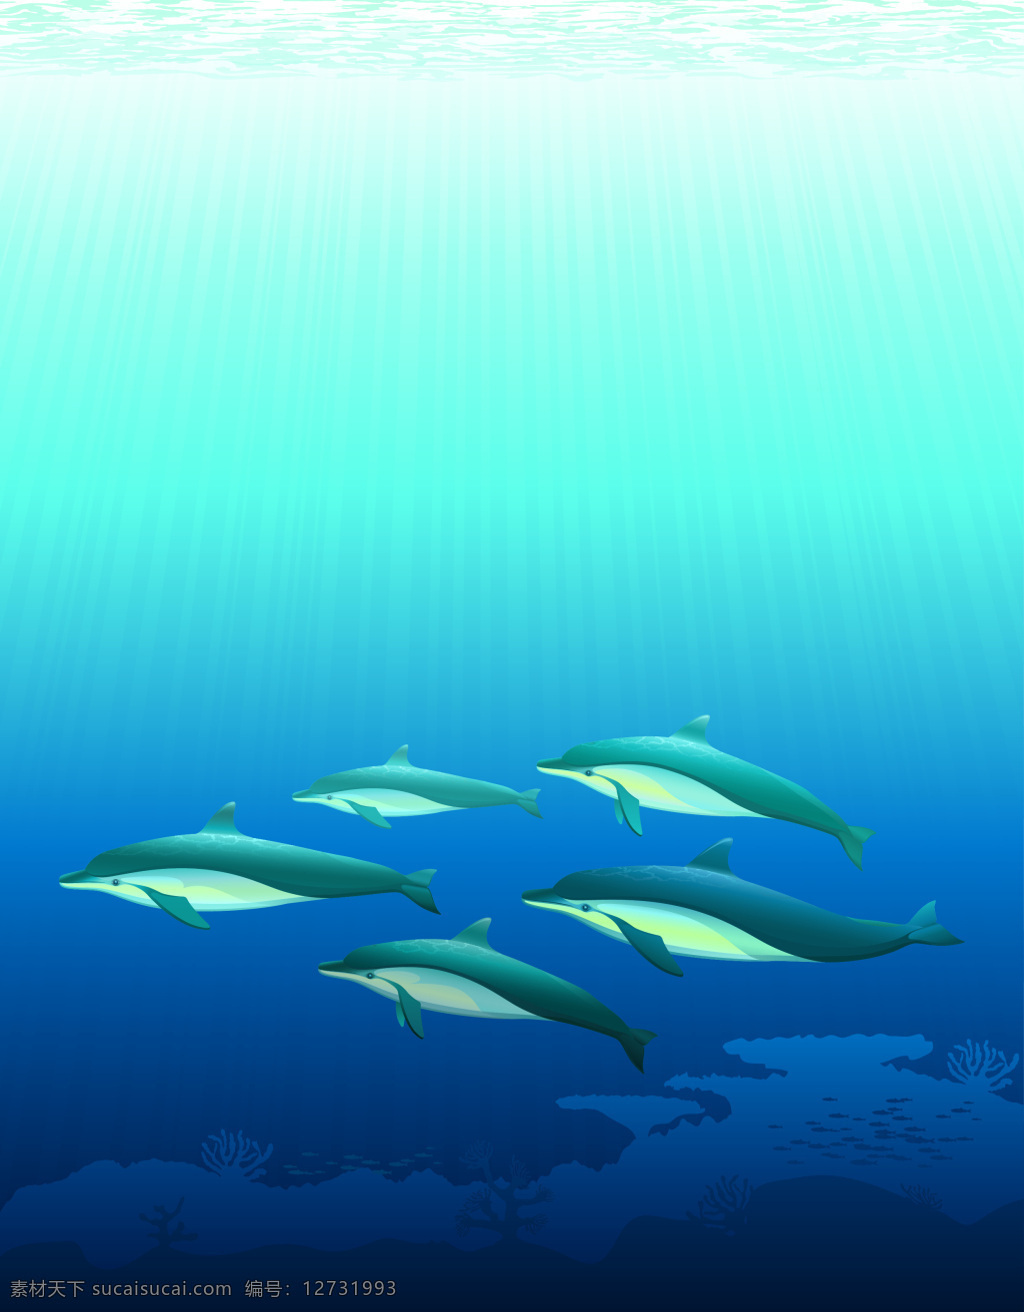 矢量 卡通 海底 鱼群 背景 大海 海报 海洋生物 蓝色 清新